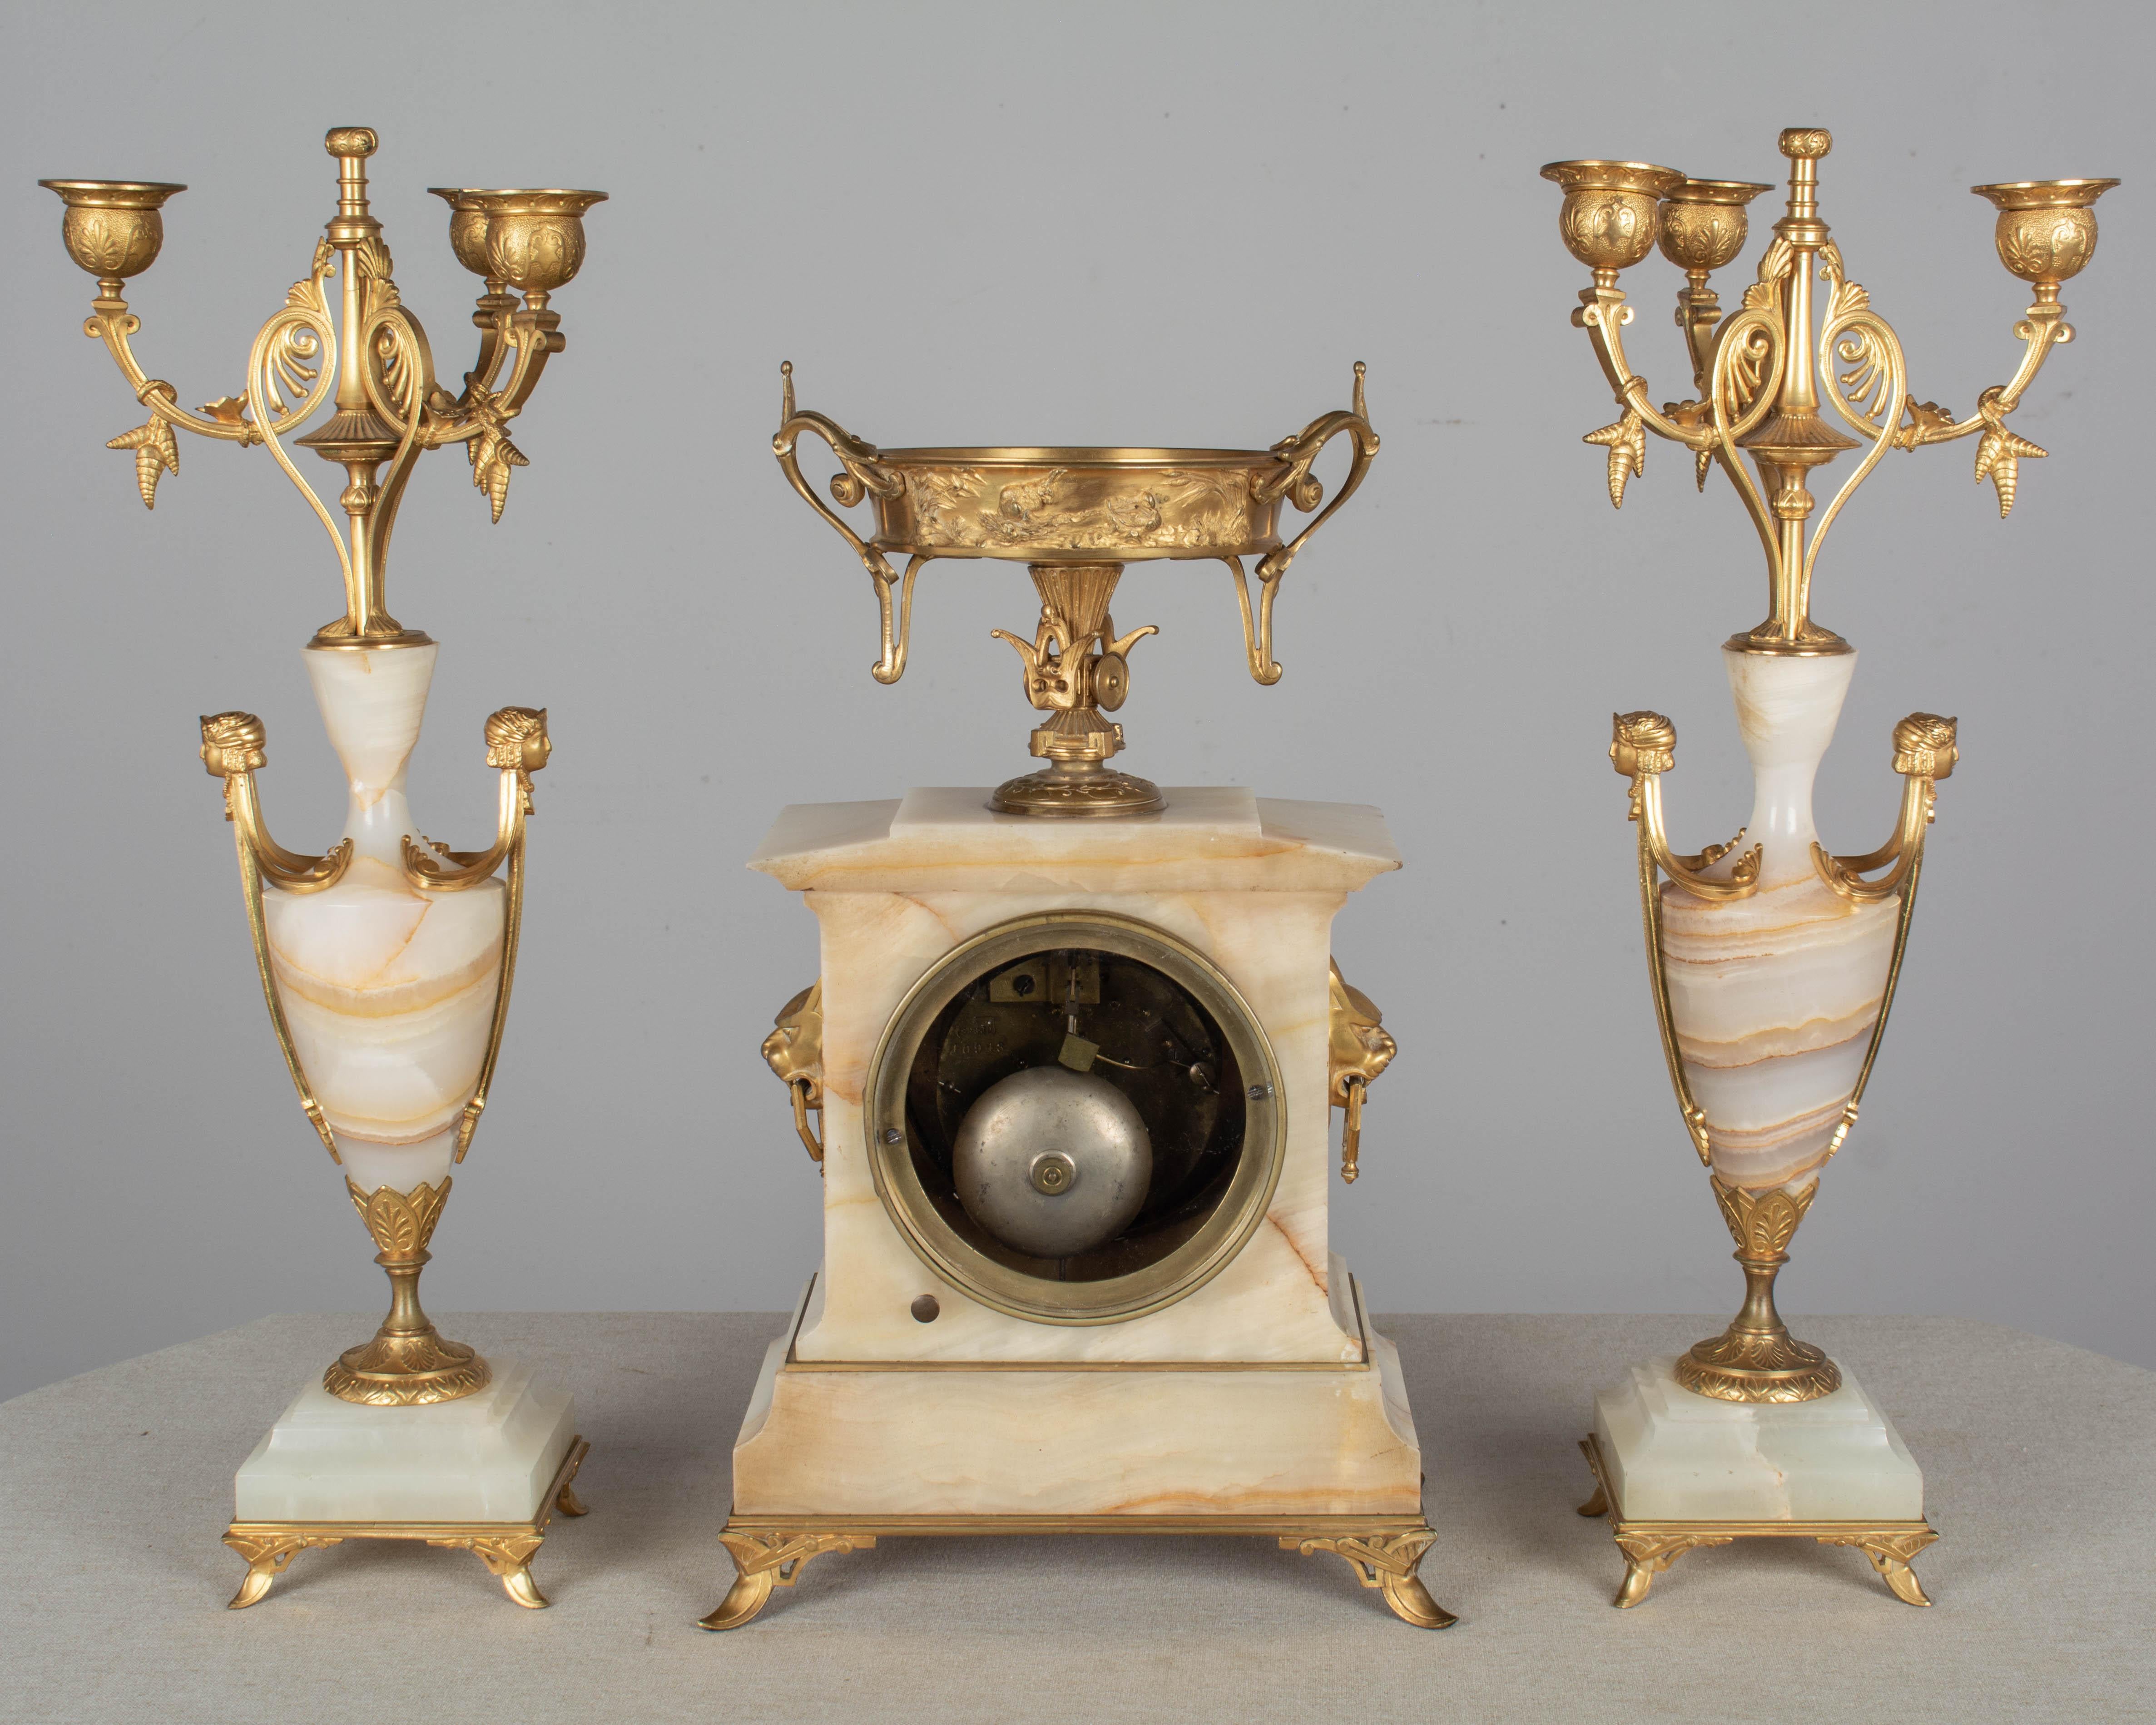 Garniture de cheminée Art déco française en trois parties, comprenant une horloge et une paire de candélabres à trois lumières. Onyx et bronze doré avec moulage fin et dorure brillante. Le cadran de l'horloge porte le nom du fabricant : Oudin,